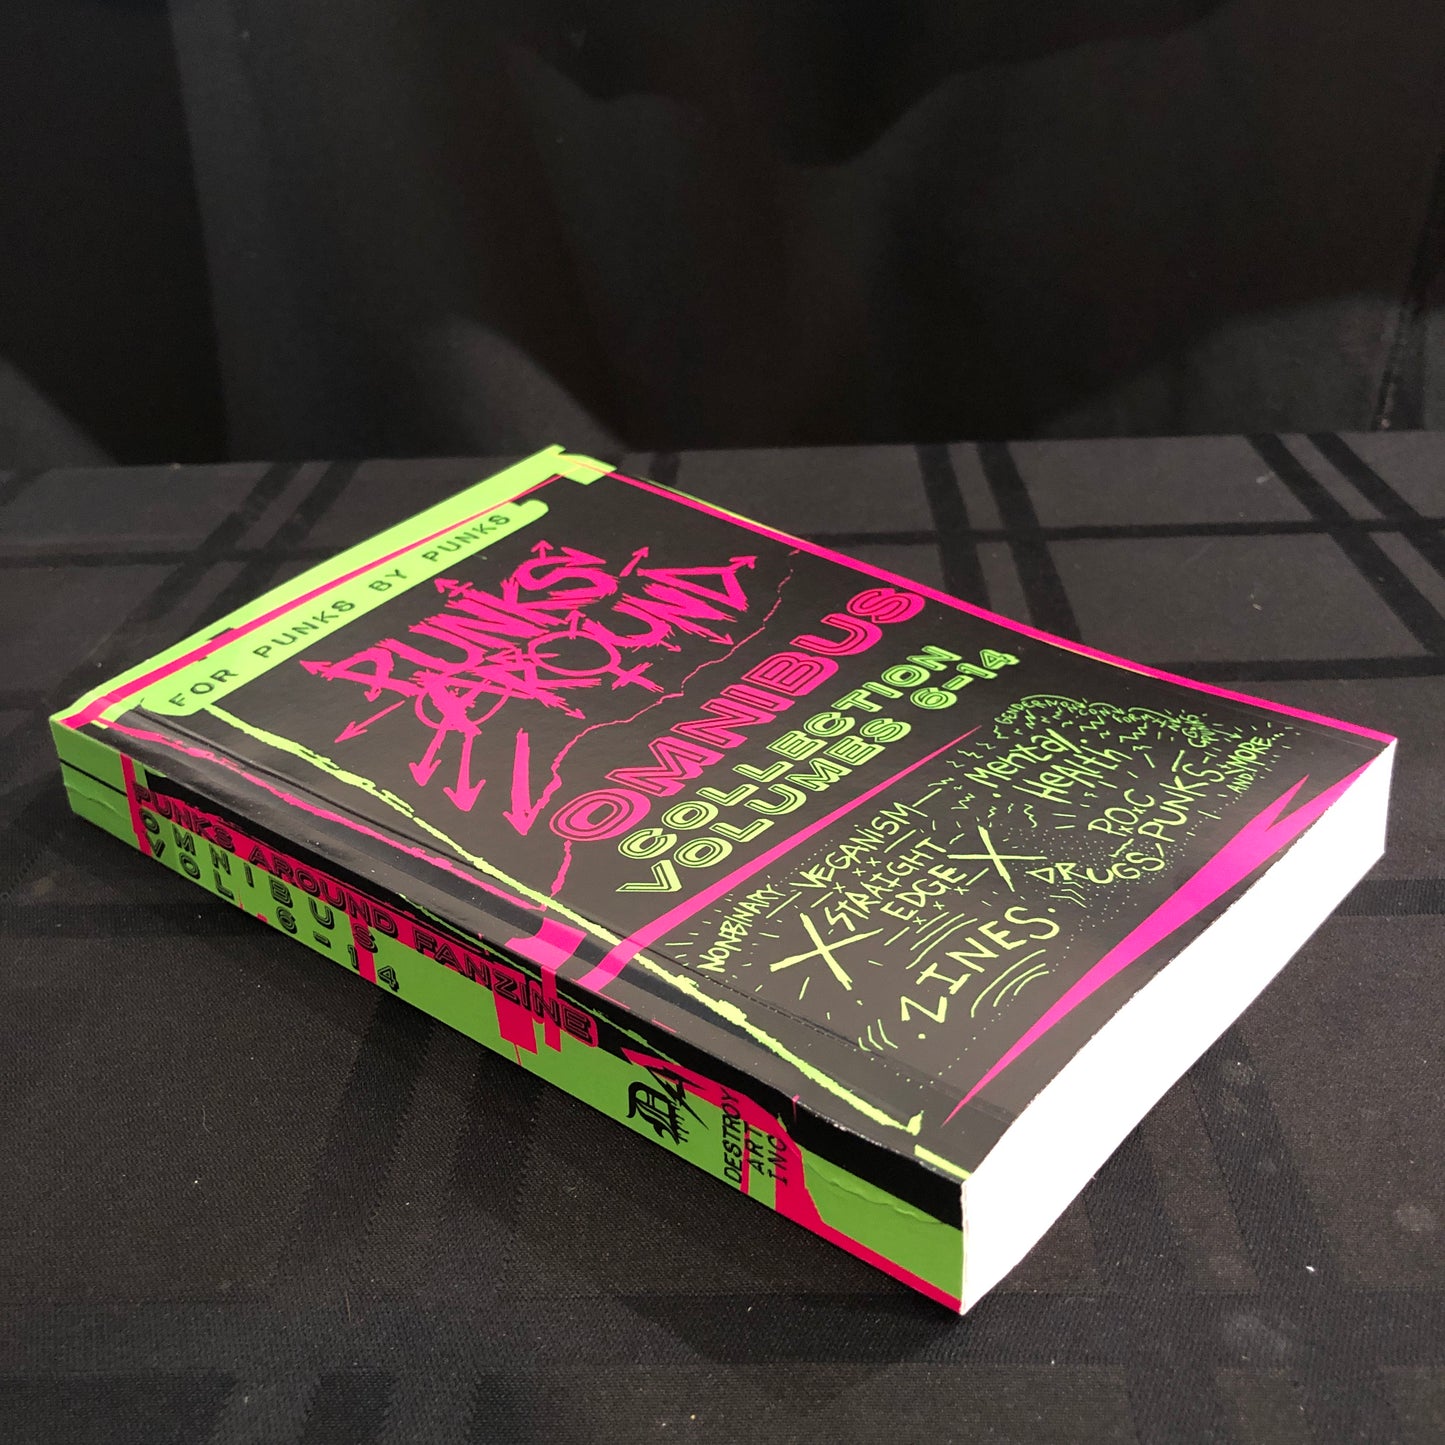 Punks Around Omnibus Book